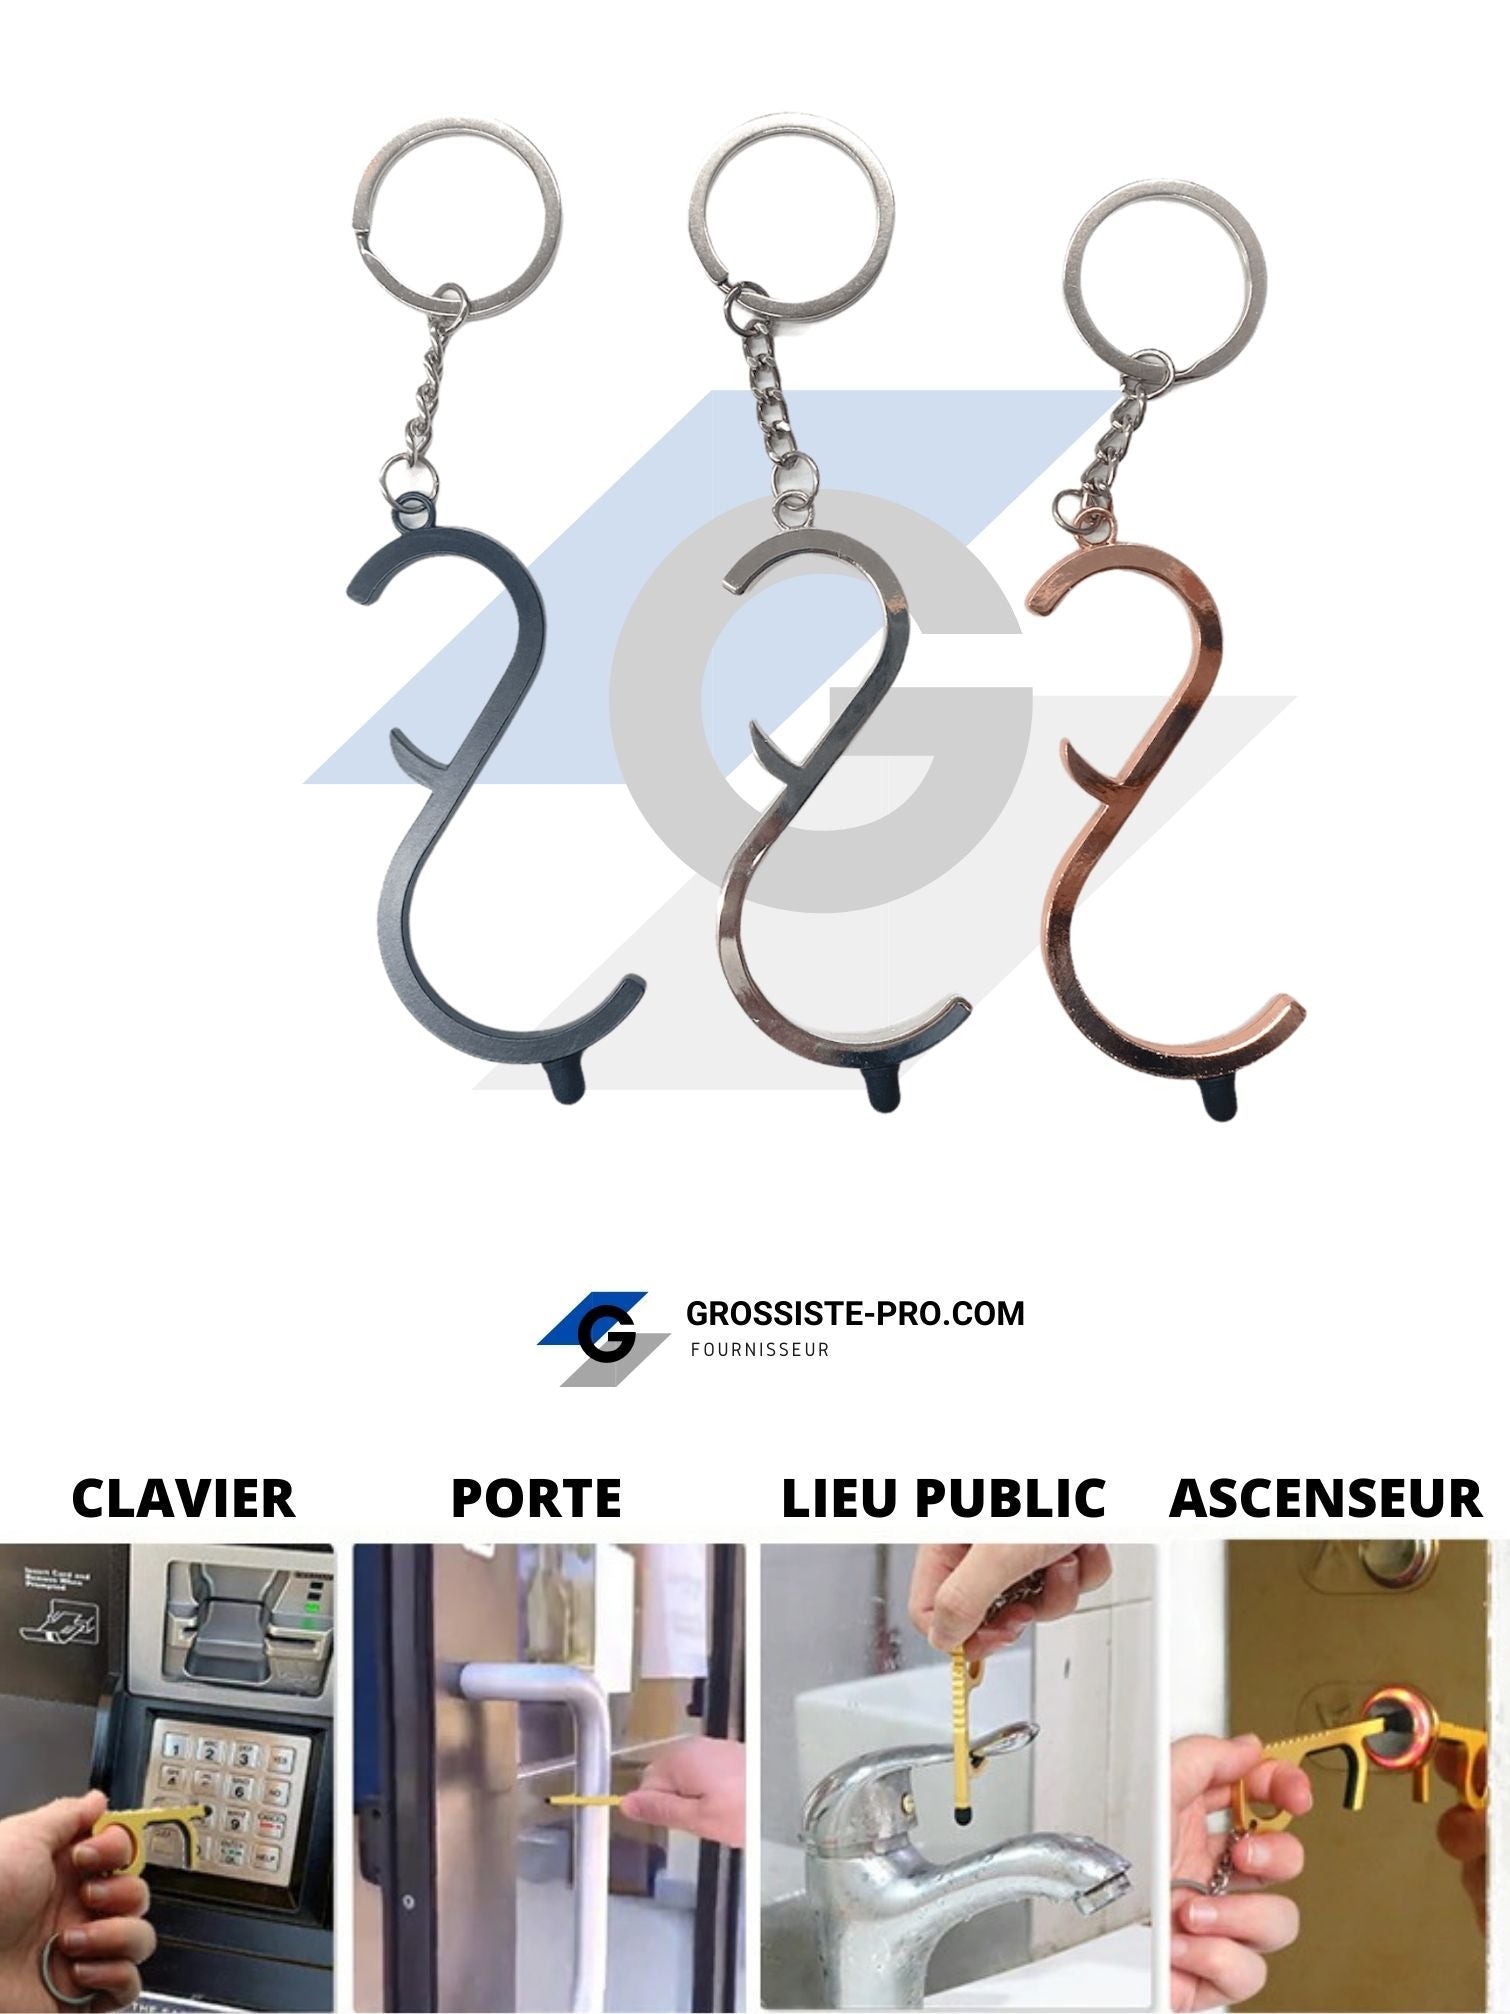 ANTI-COVID19 - Porte-clé "sans-contact" S Décapsuleur (x12) 1,50€/unité | Grossiste-pro